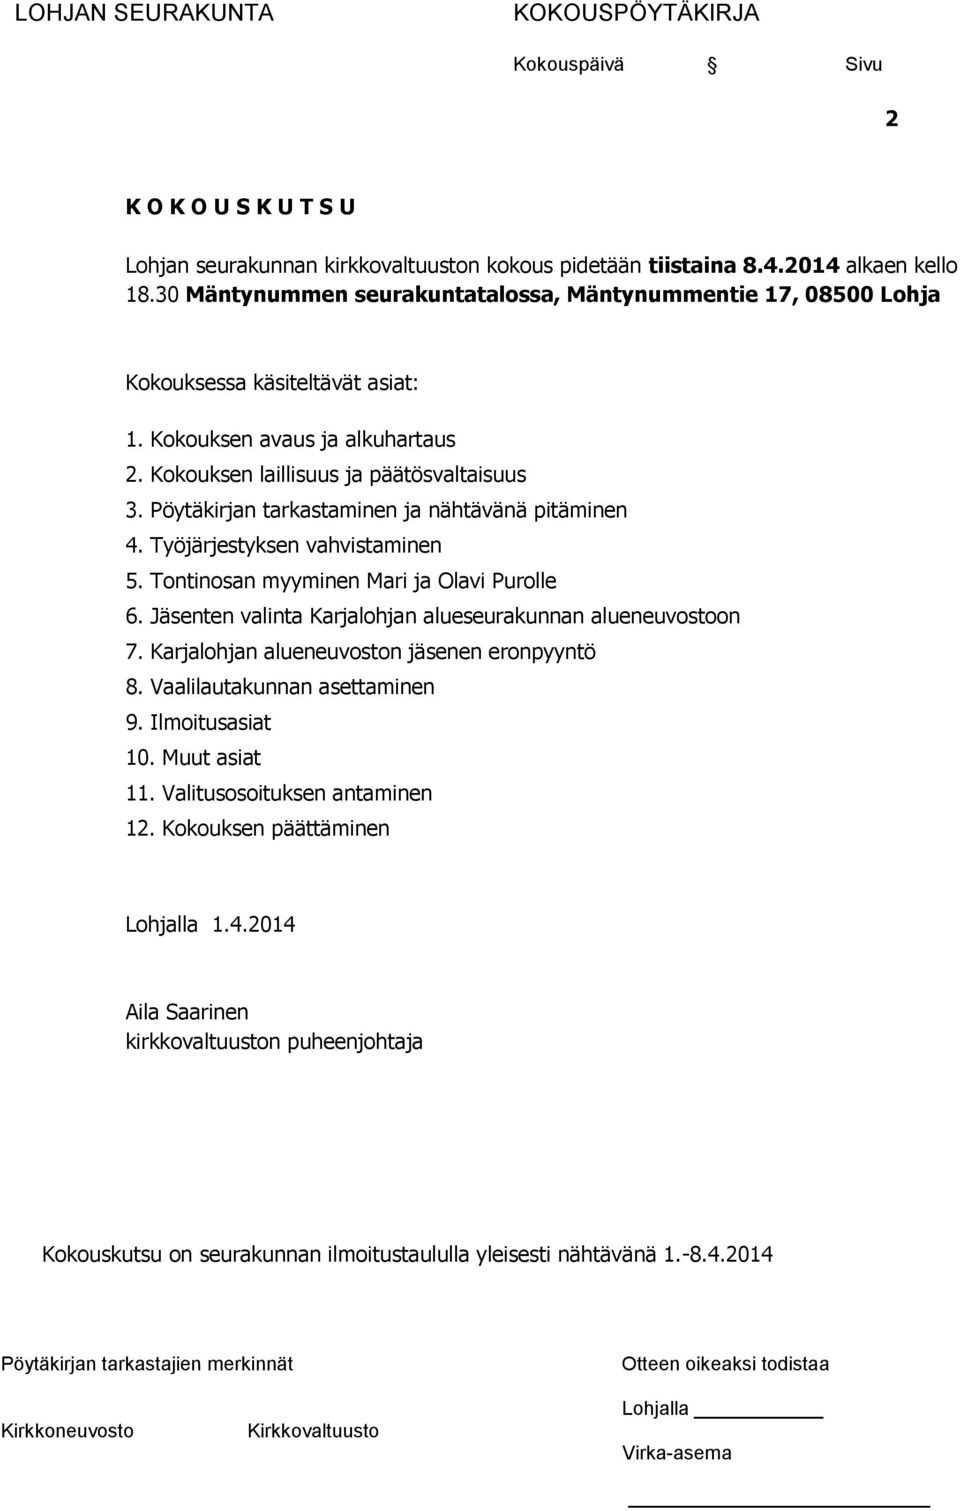 Pöytäkirjan tarkastaminen ja nähtävänä pitäminen 4. Työjärjestyksen vahvistaminen 5. Tontinosan myyminen Mari ja Olavi Purolle 6. Jäsenten valinta Karjalohjan alueseurakunnan alueneuvostoon 7.